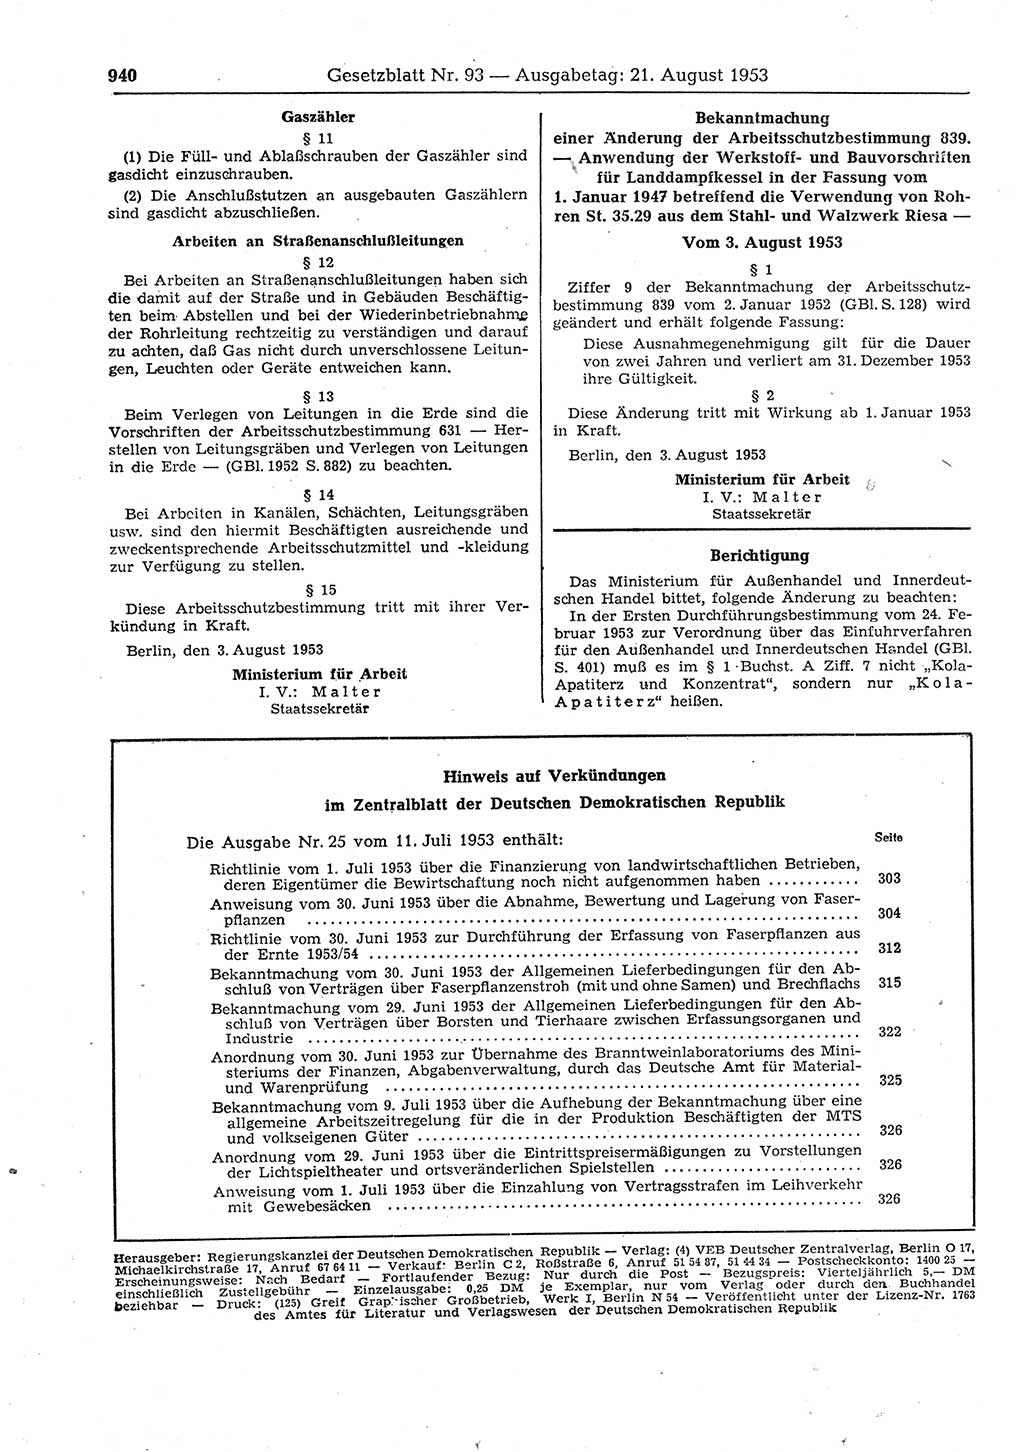 Gesetzblatt (GBl.) der Deutschen Demokratischen Republik (DDR) 1953, Seite 940 (GBl. DDR 1953, S. 940)